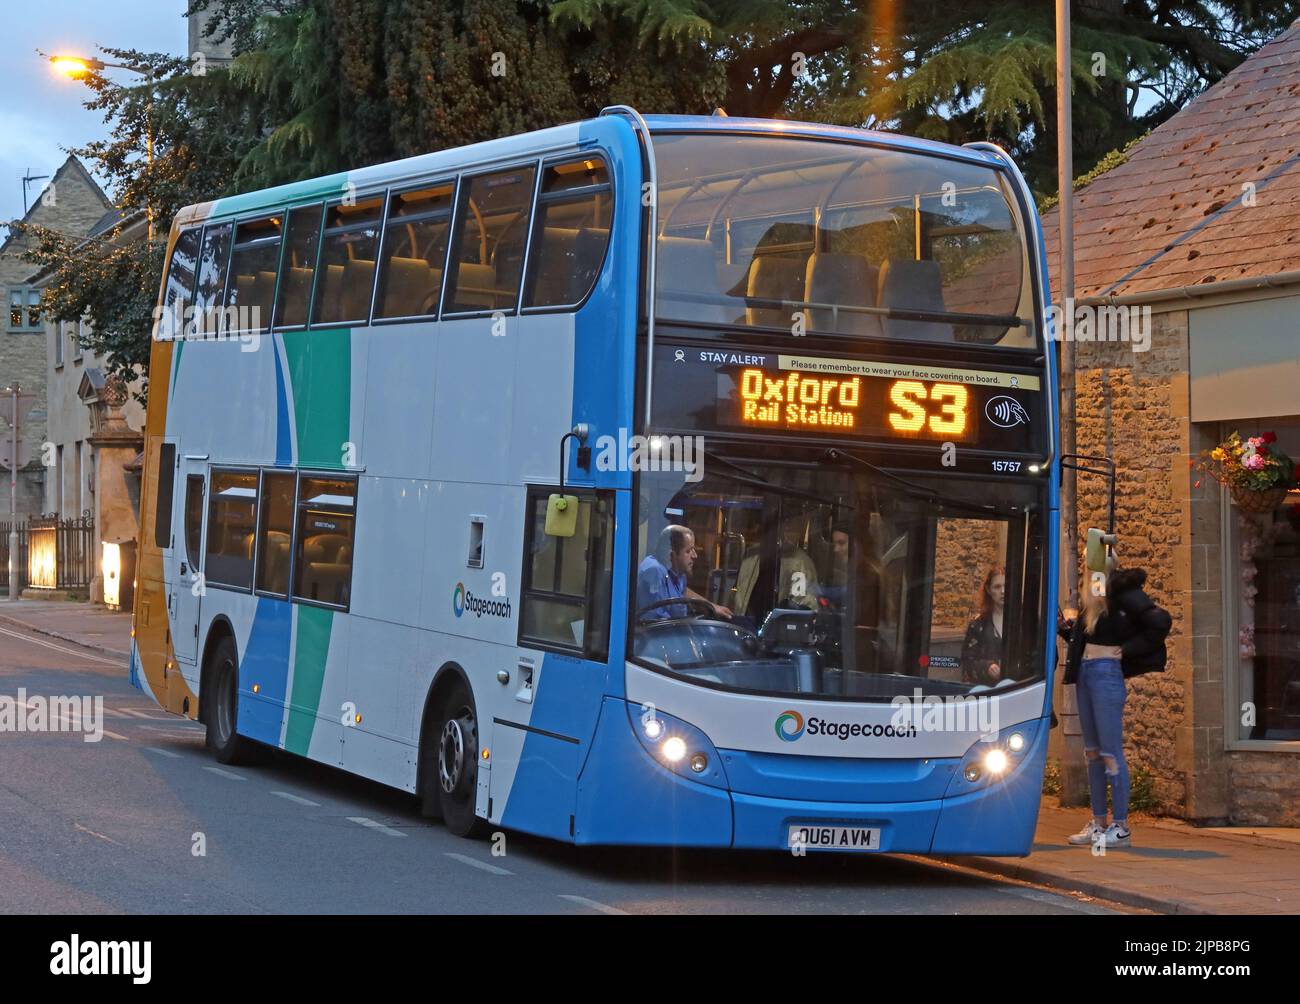 Service de bus Stagecoach S3, à la gare d'Oxford, depuis Chipping Norton, les transports en commun de l'Oxfordshire, Angleterre, Royaume-Uni Banque D'Images